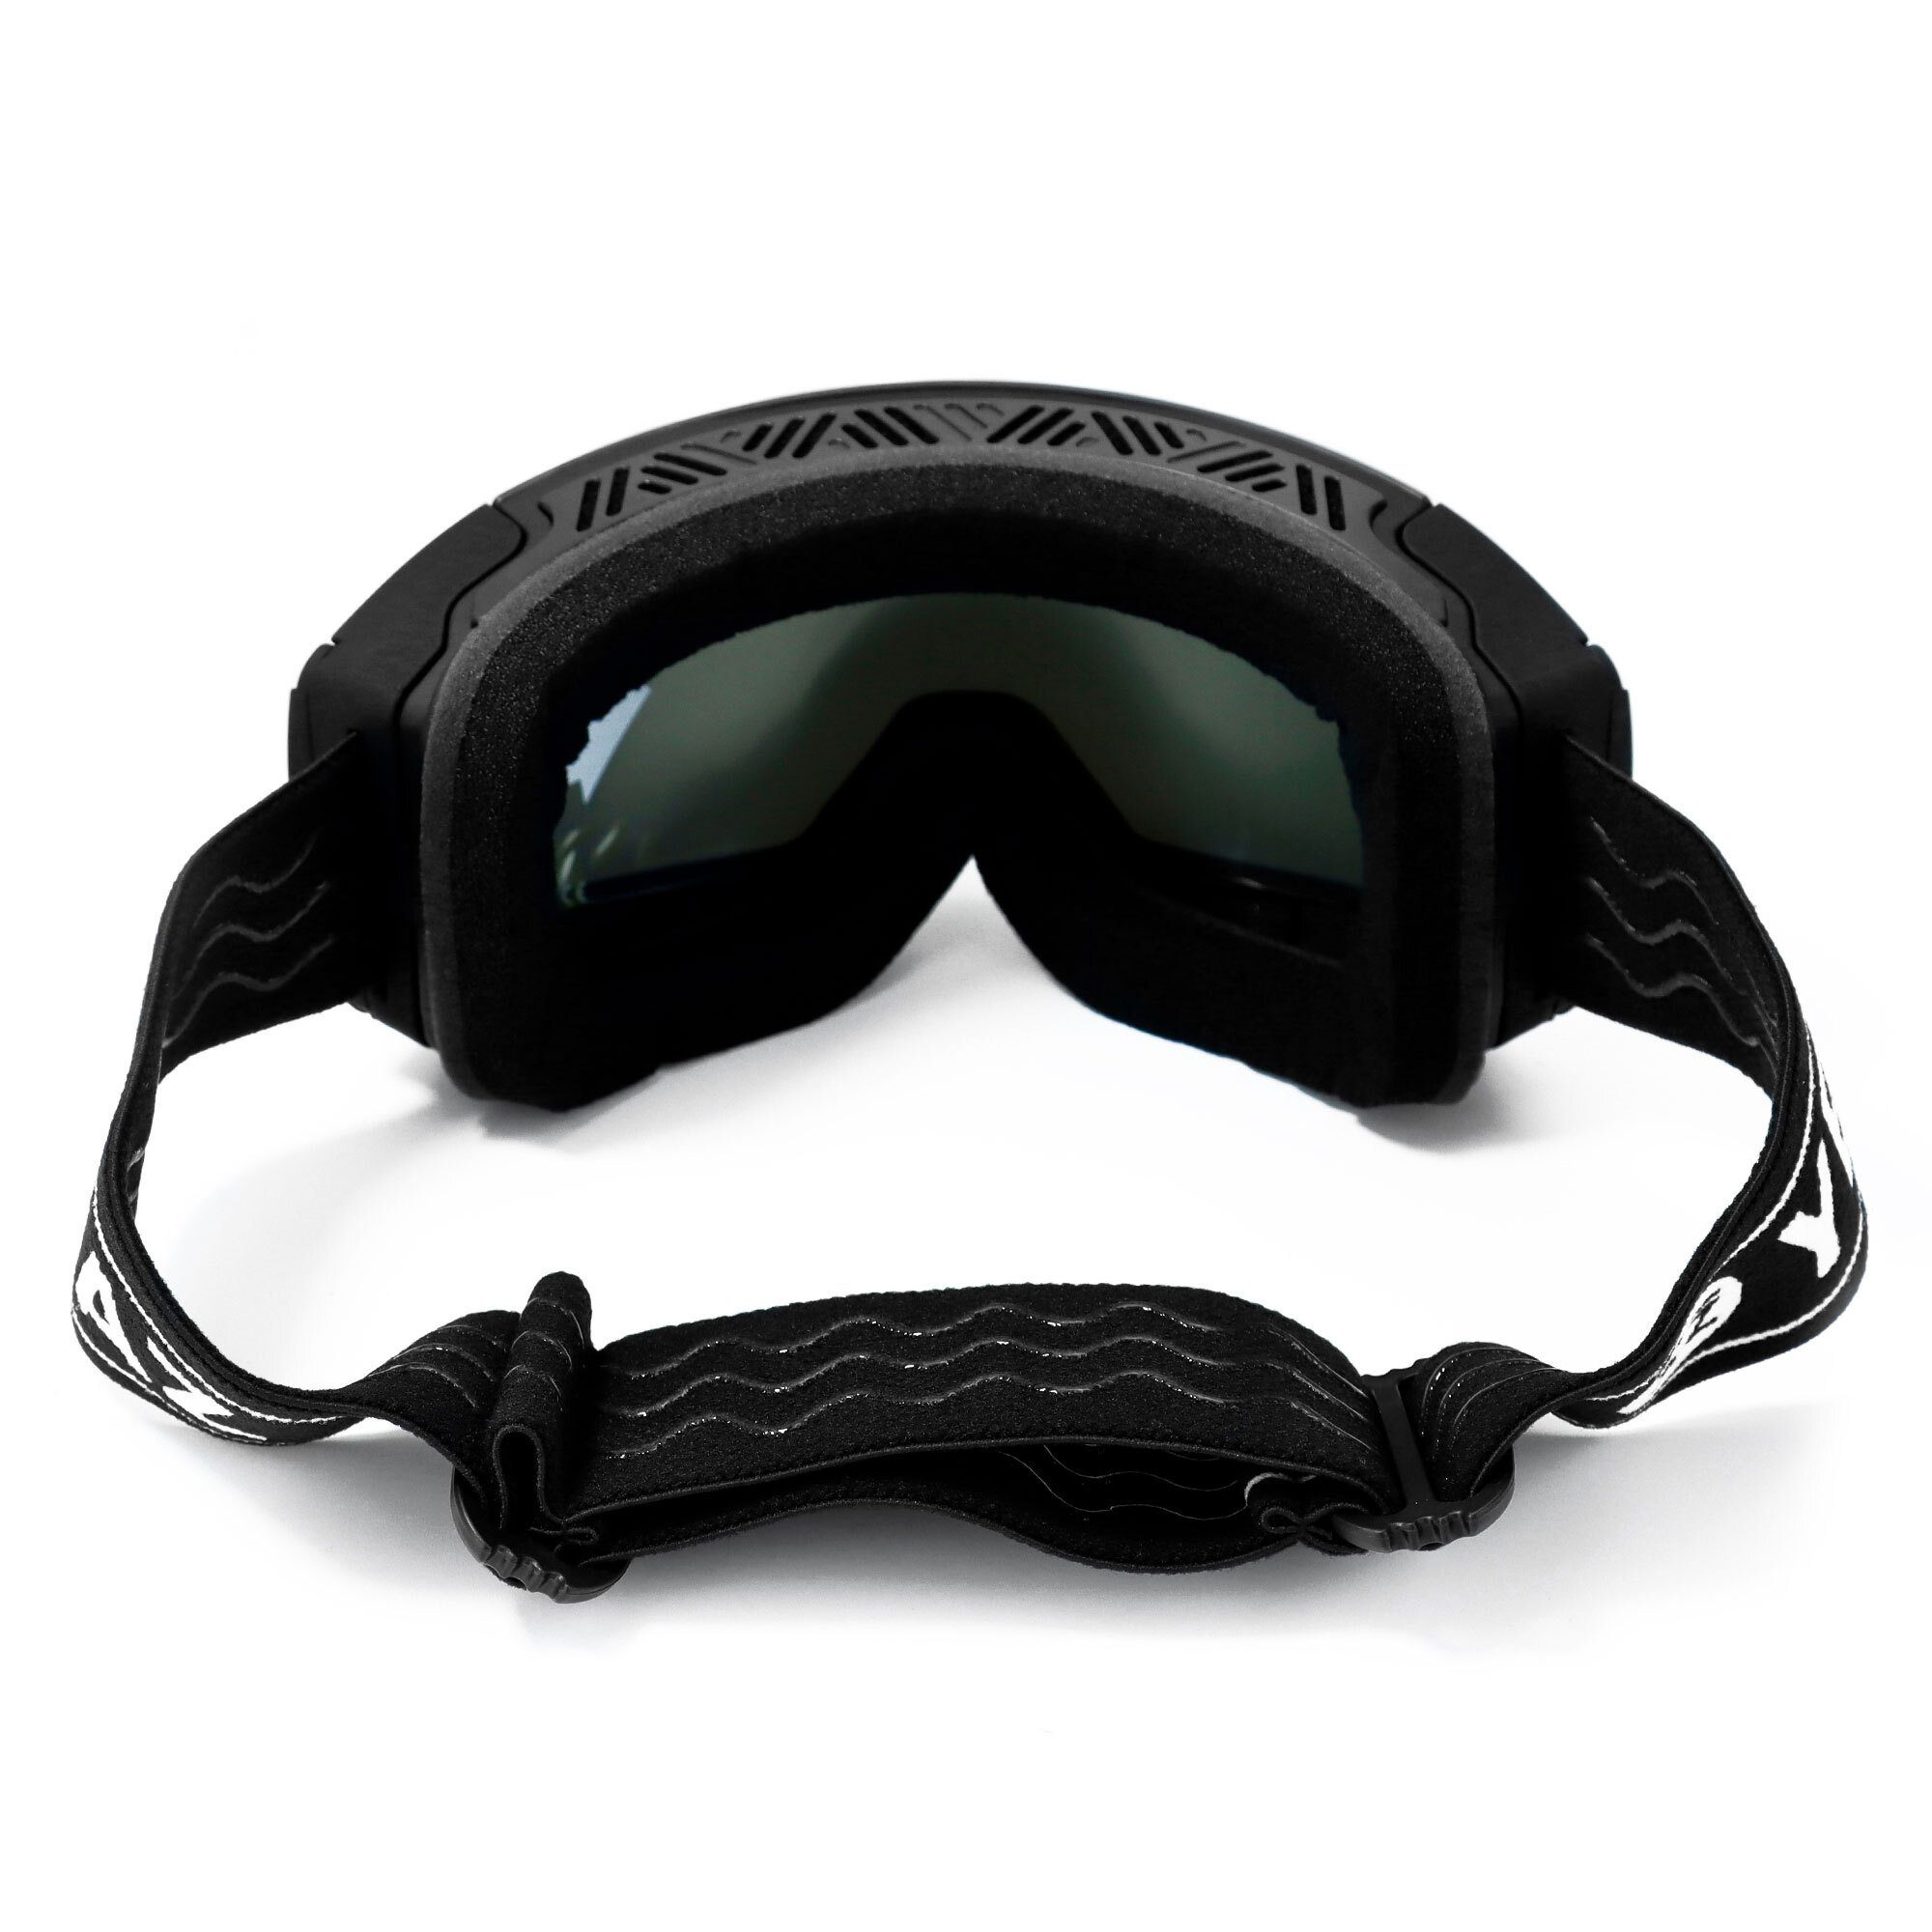 YEAZ Skibrille TWEAK-X ski- und snowboard-brille, Jugendliche für und Snowboardbrille und Erwachsene Premium-Ski